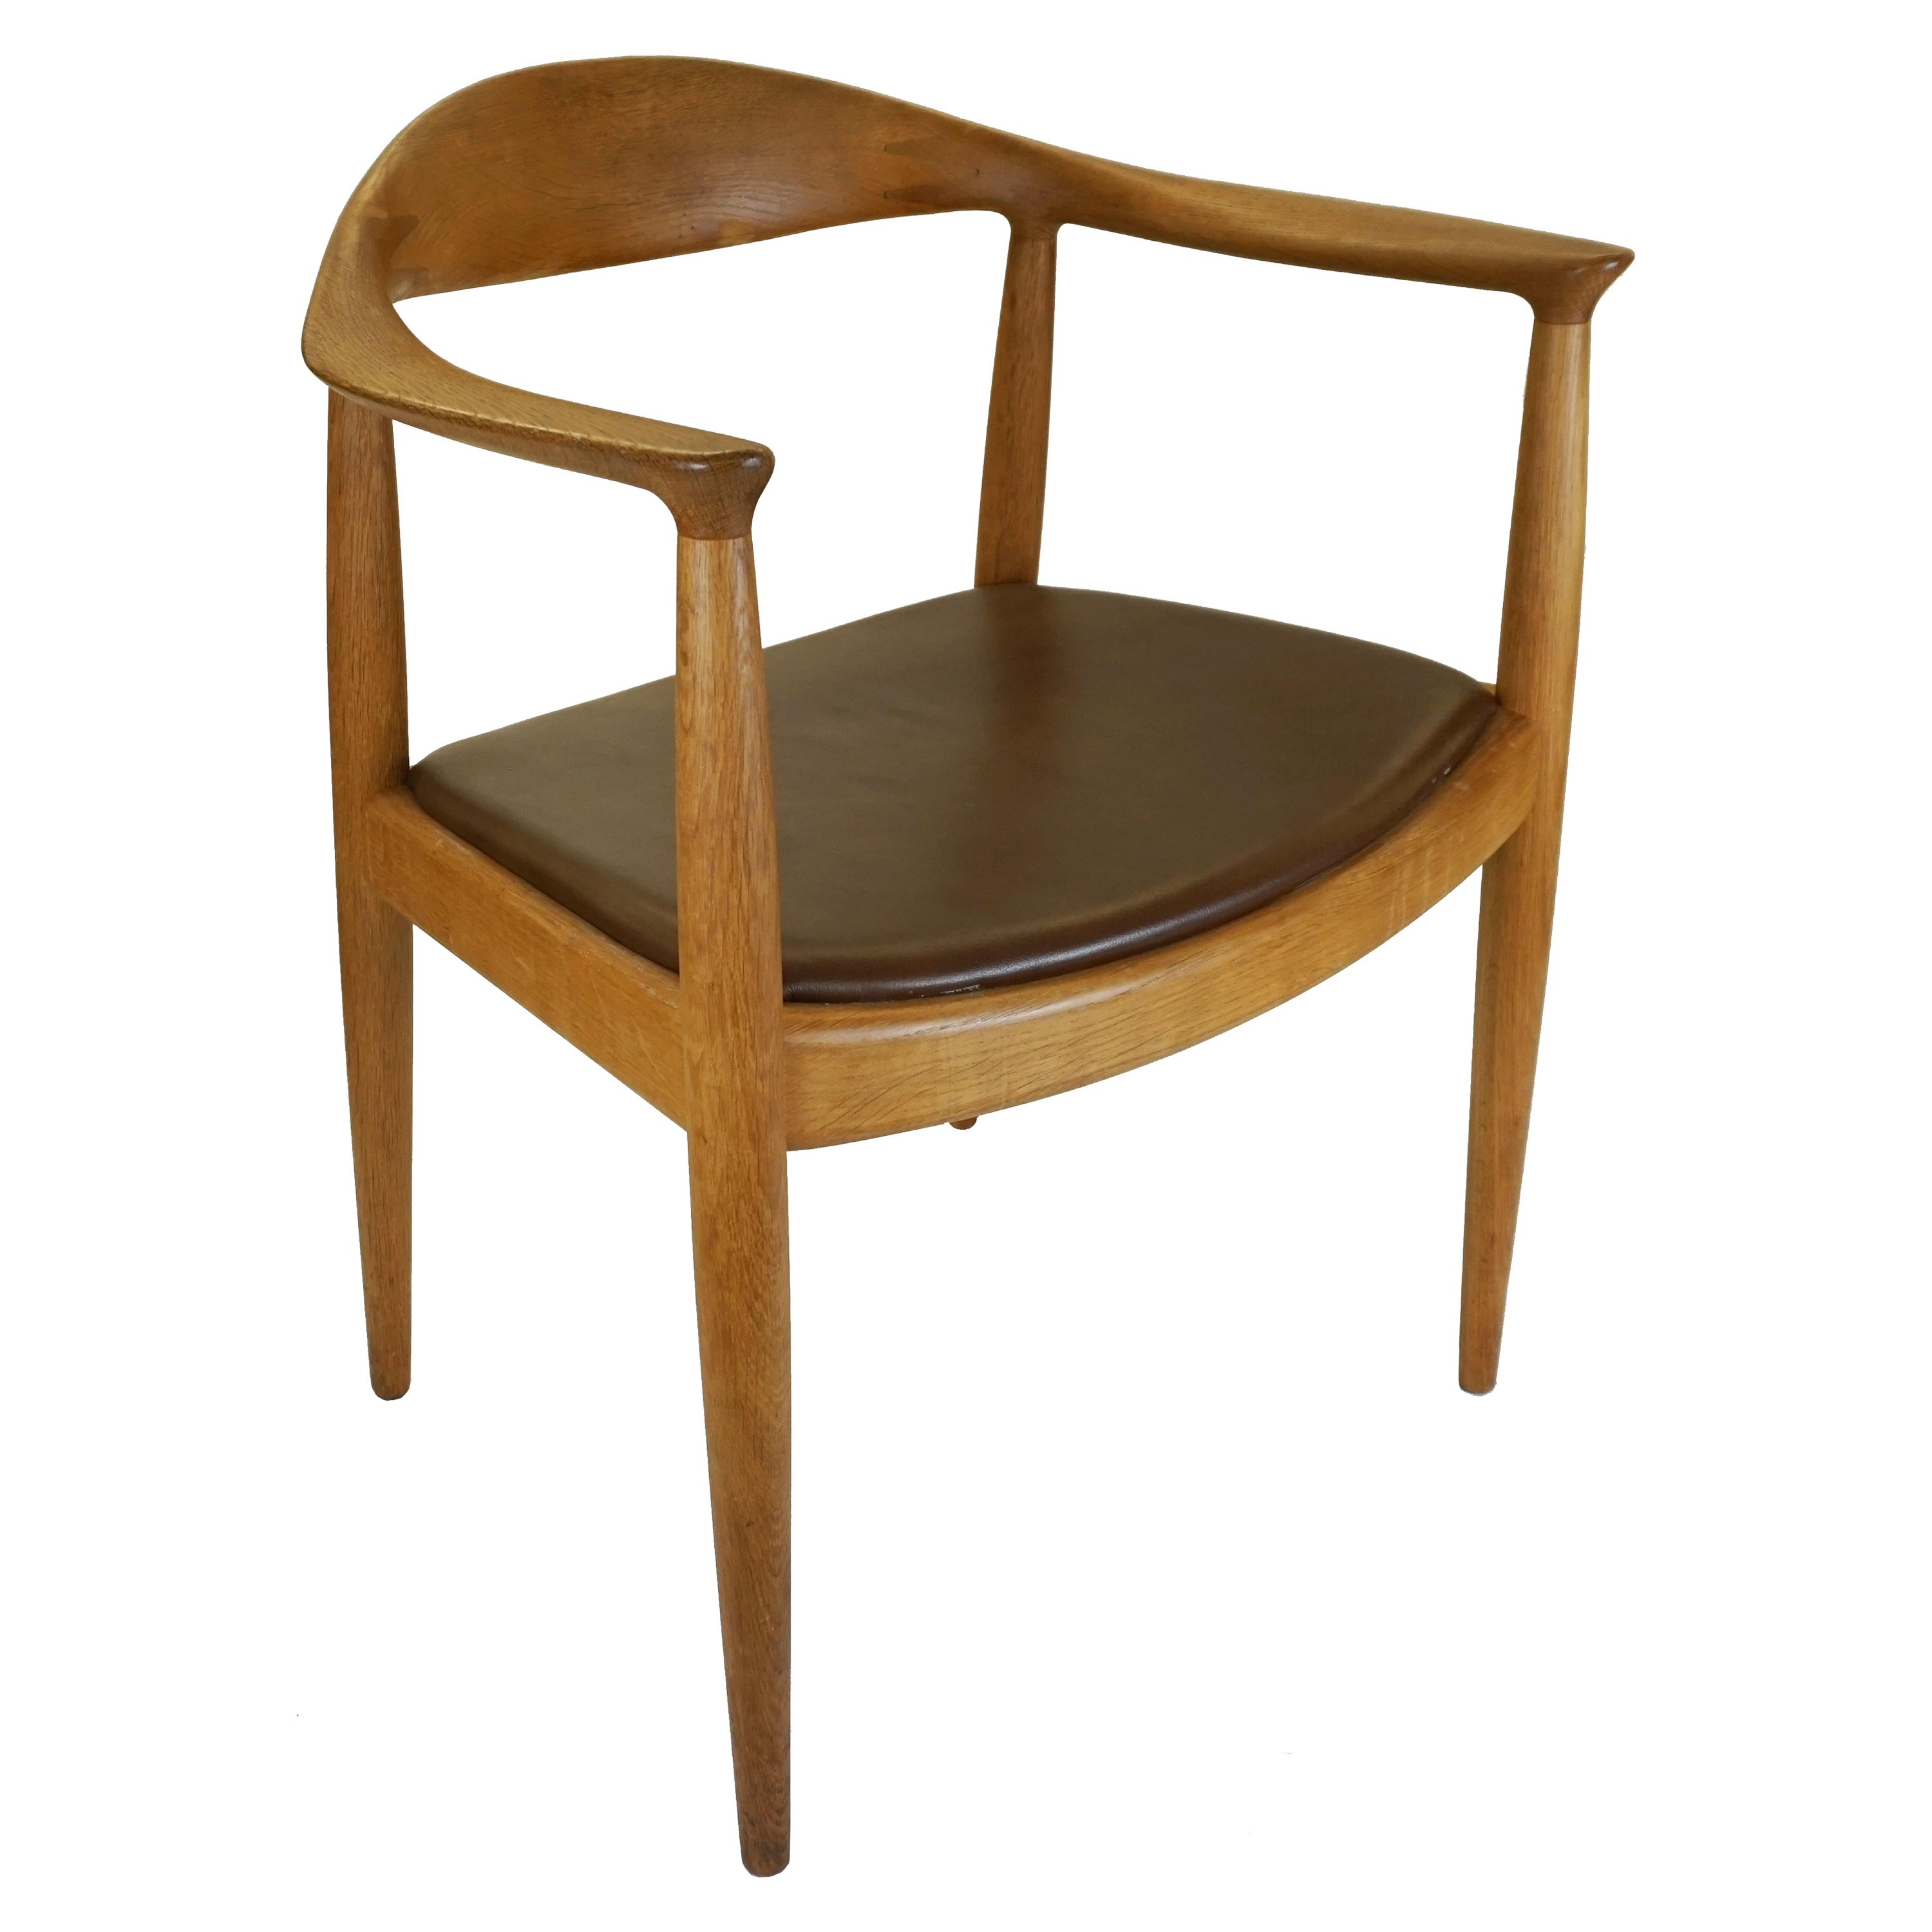 'The Chair' designed by Hans Wegner for Johannes Hansen, Denmark